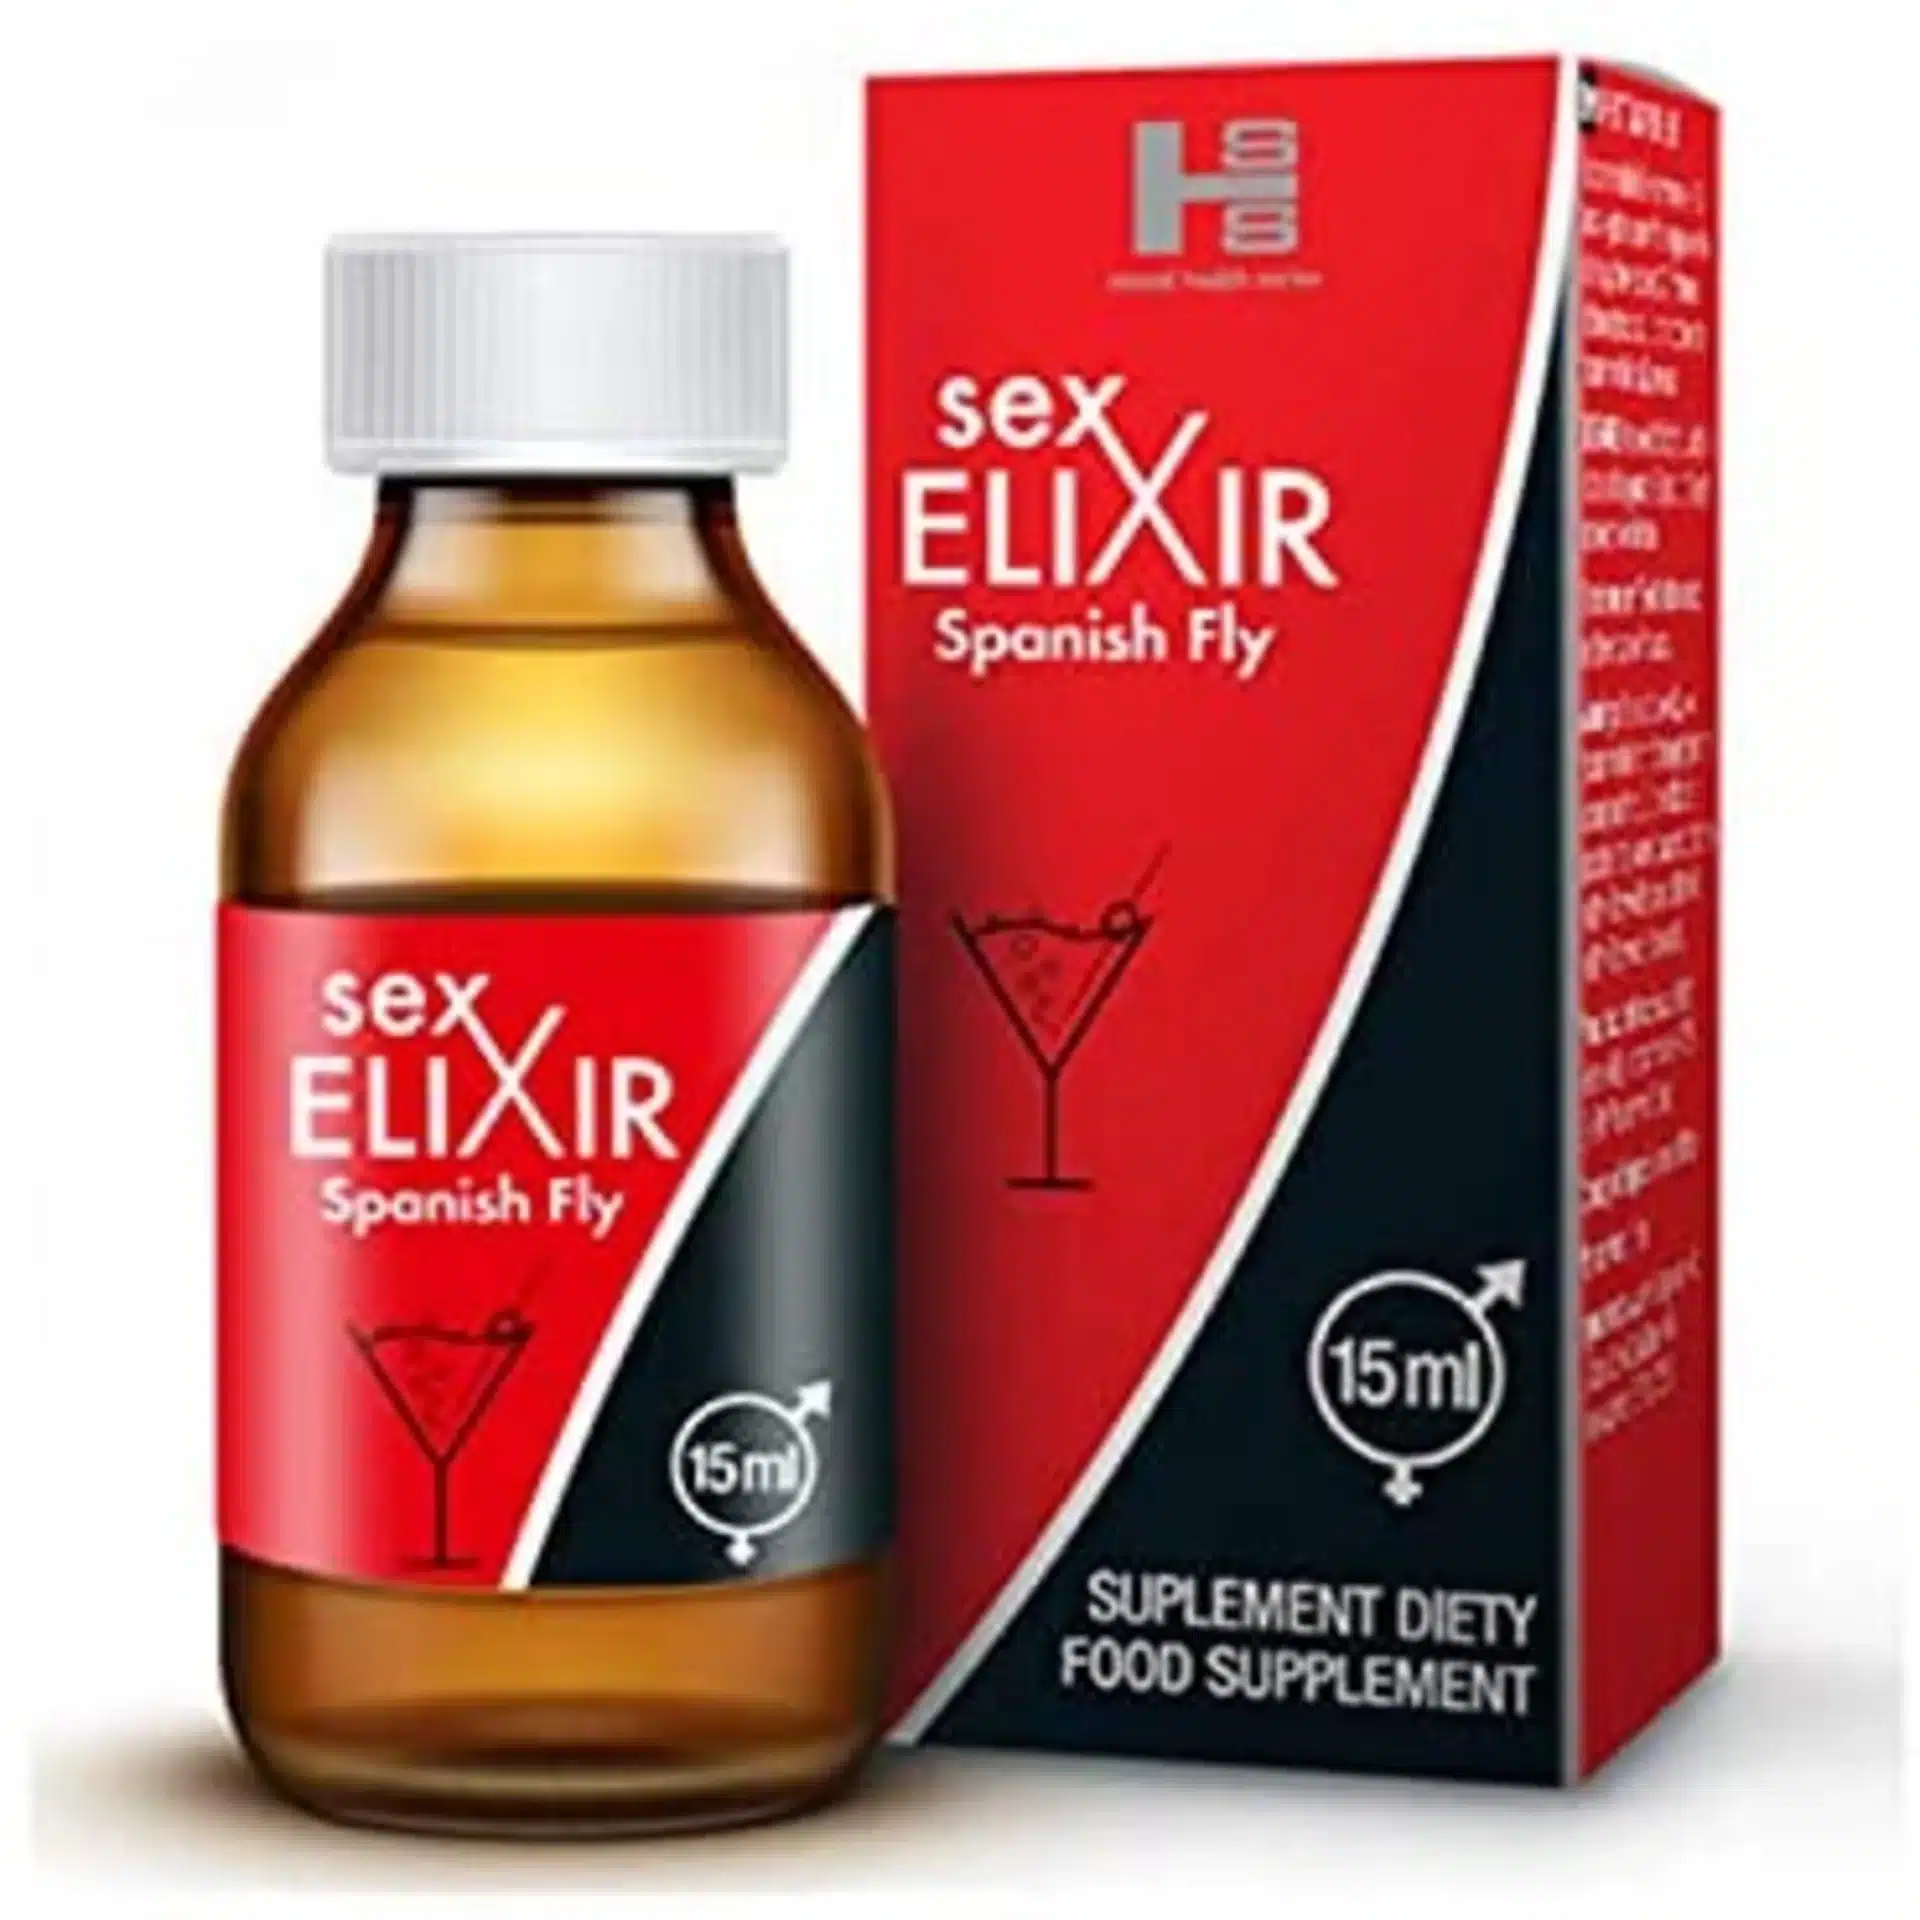 Sex Elixir Spanish fly